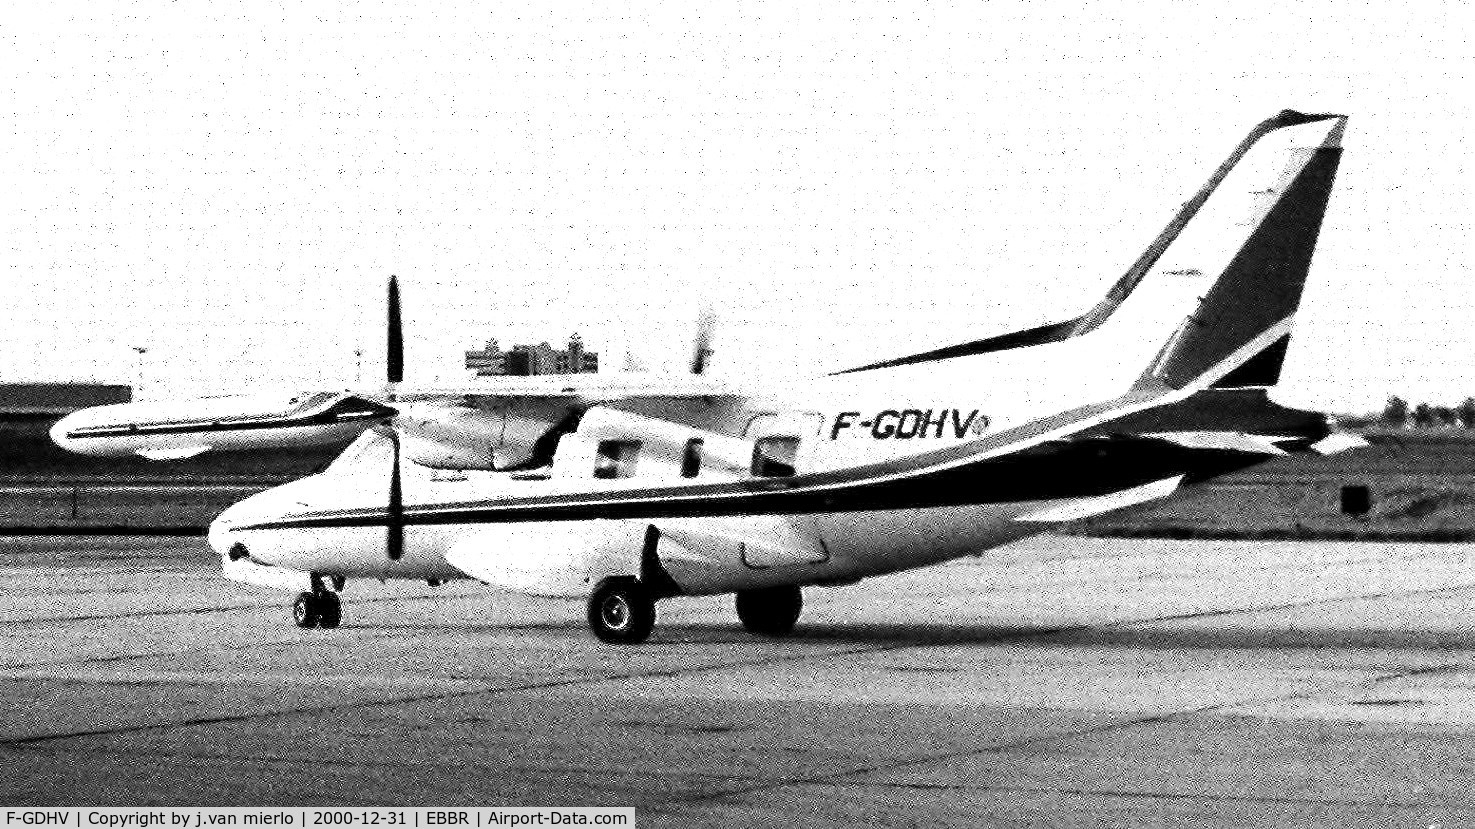 F-GDHV, 1980 Mitsubishi MU-2B-60 Marquise C/N 779SA, Brussels G.A.T.